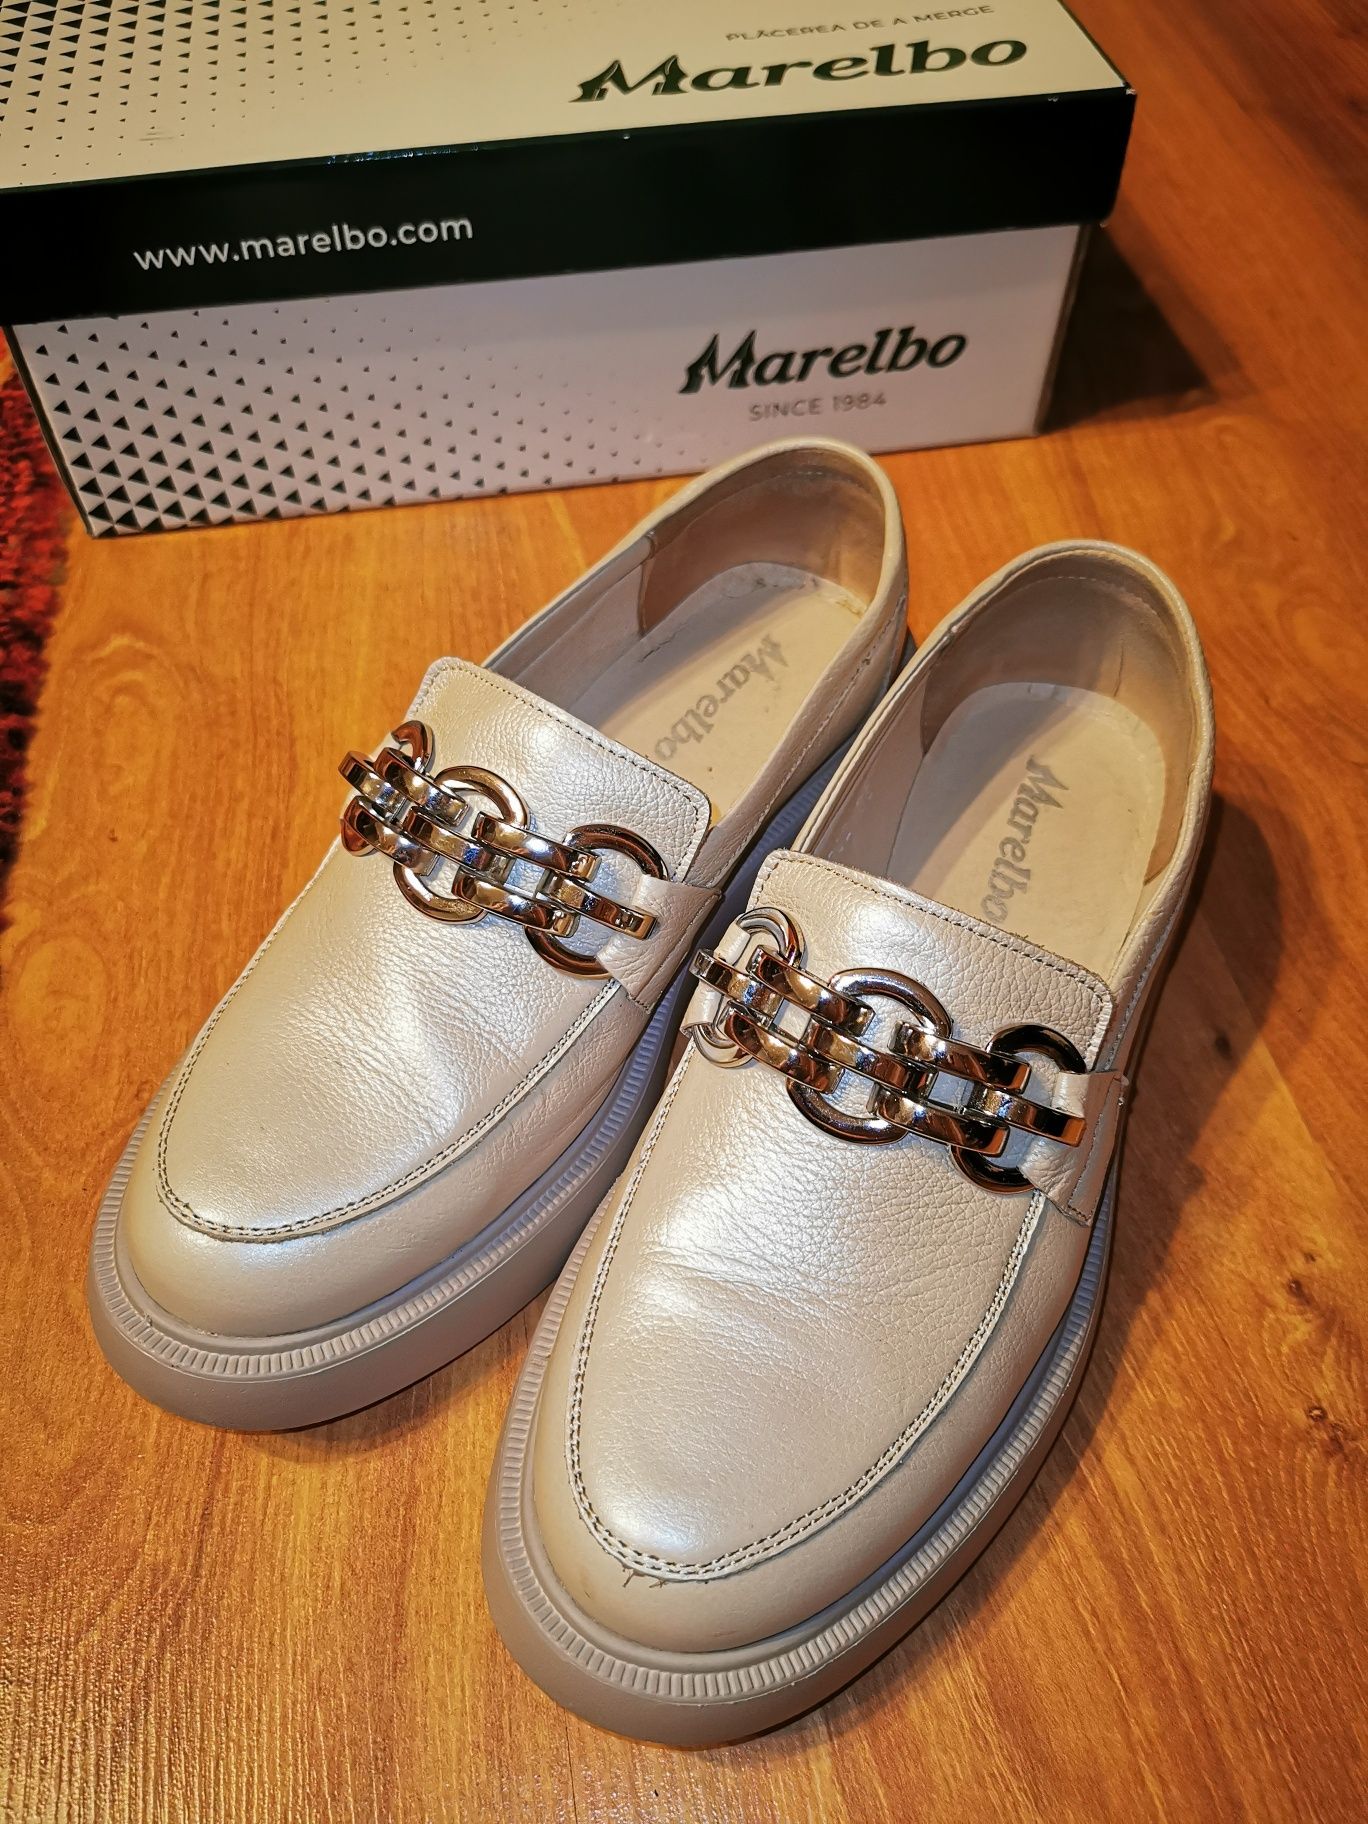 Pantofi dama Marelbo, piele naturala, stare foarte buna, mar. 39